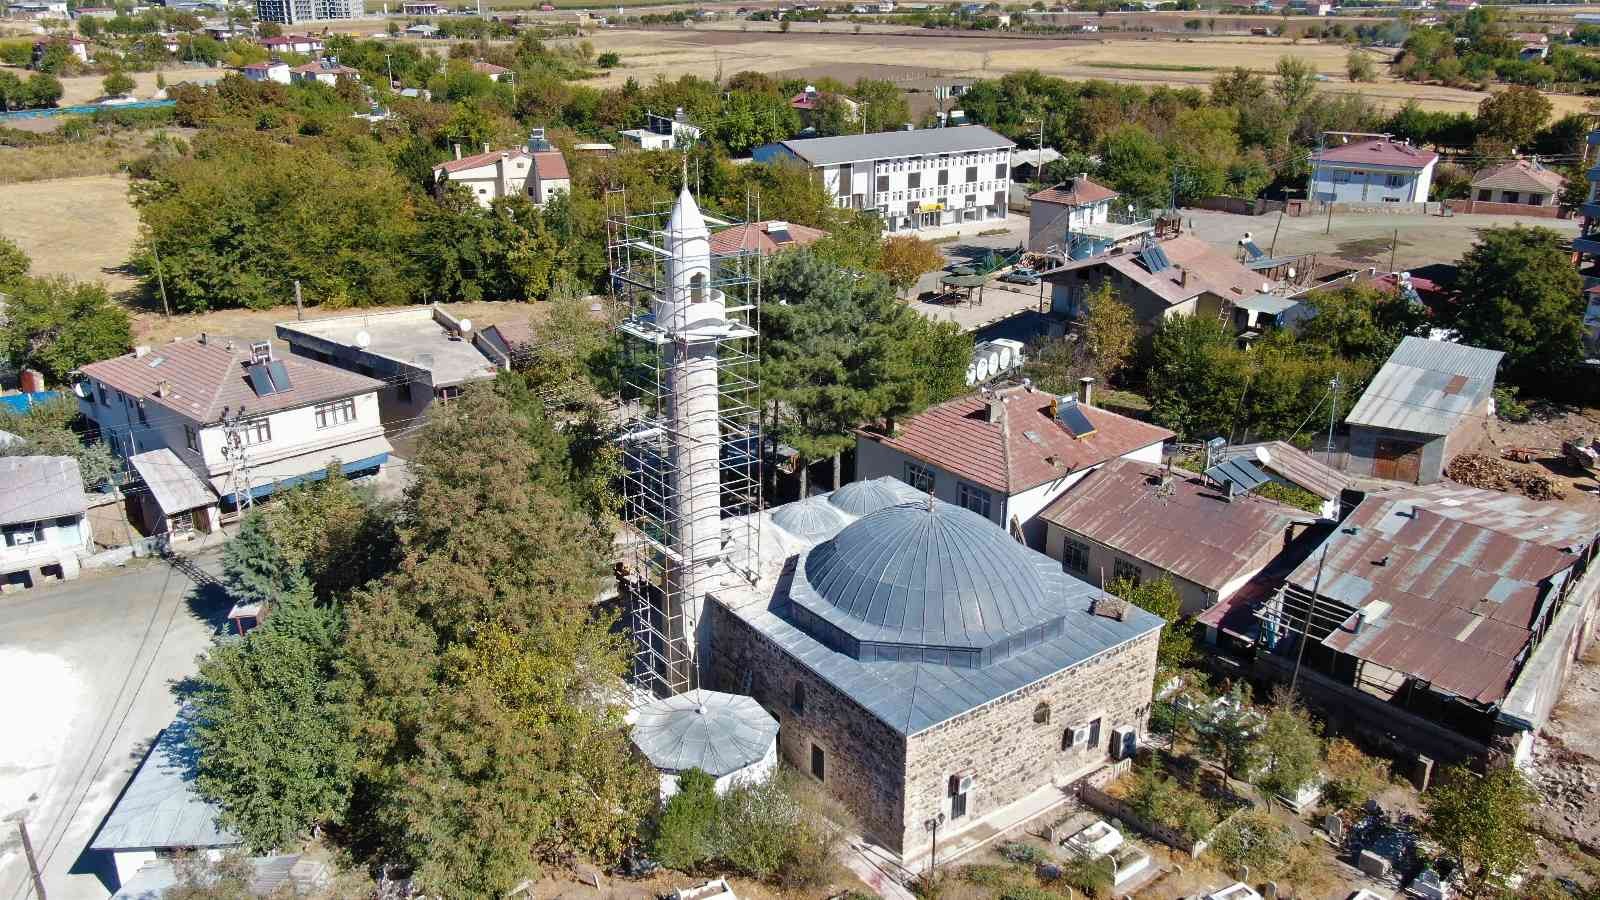 Leyleklerin yuva yapması nedeniyle yenileme çalışmaları ertelenen 386 yıllık caminin restorasyonu tamamlandı #elazig